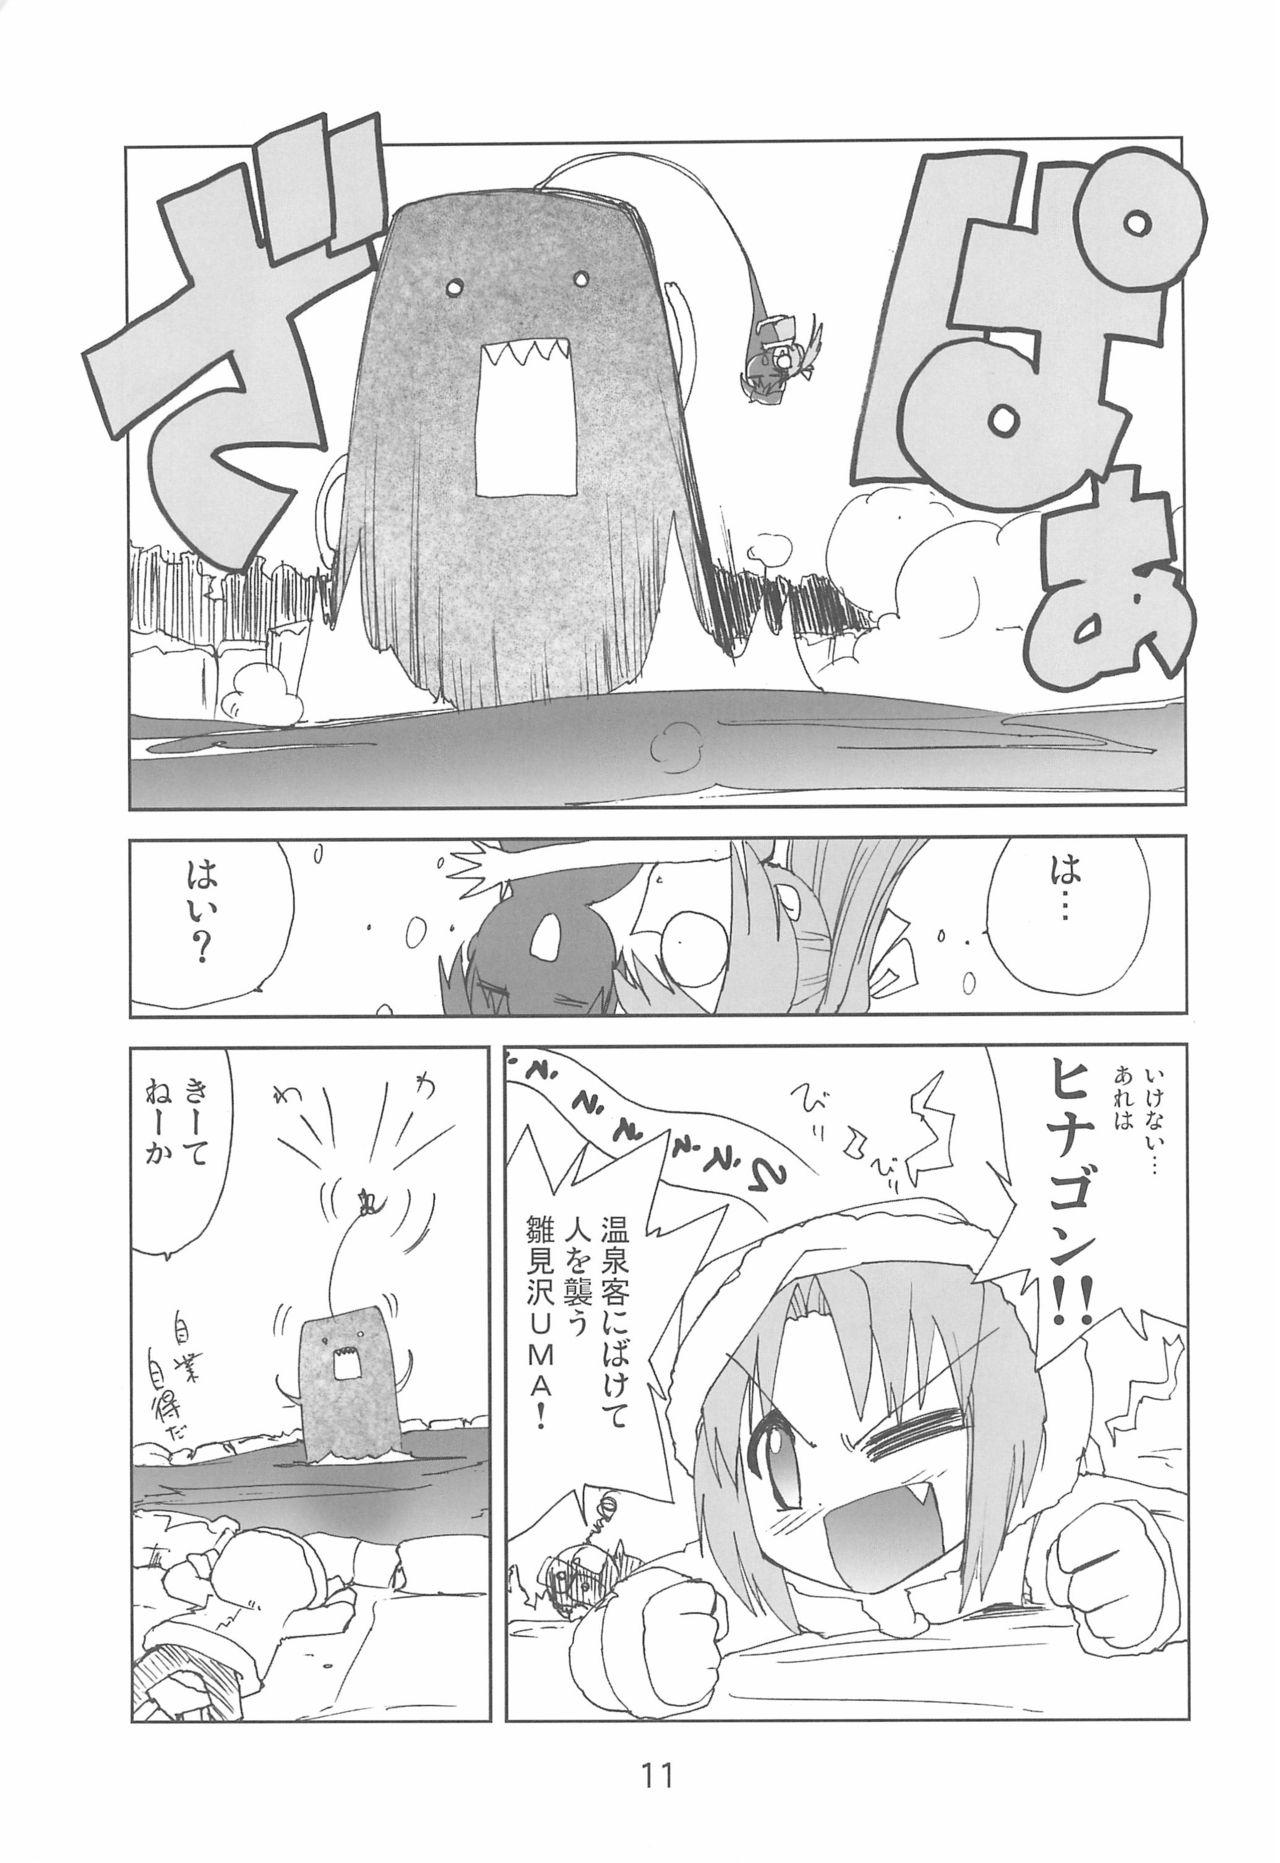 Lez Fugurashi no Naku Koro ni Kai - Higurashi no naku koro ni | when they cry Flogging - Page 11